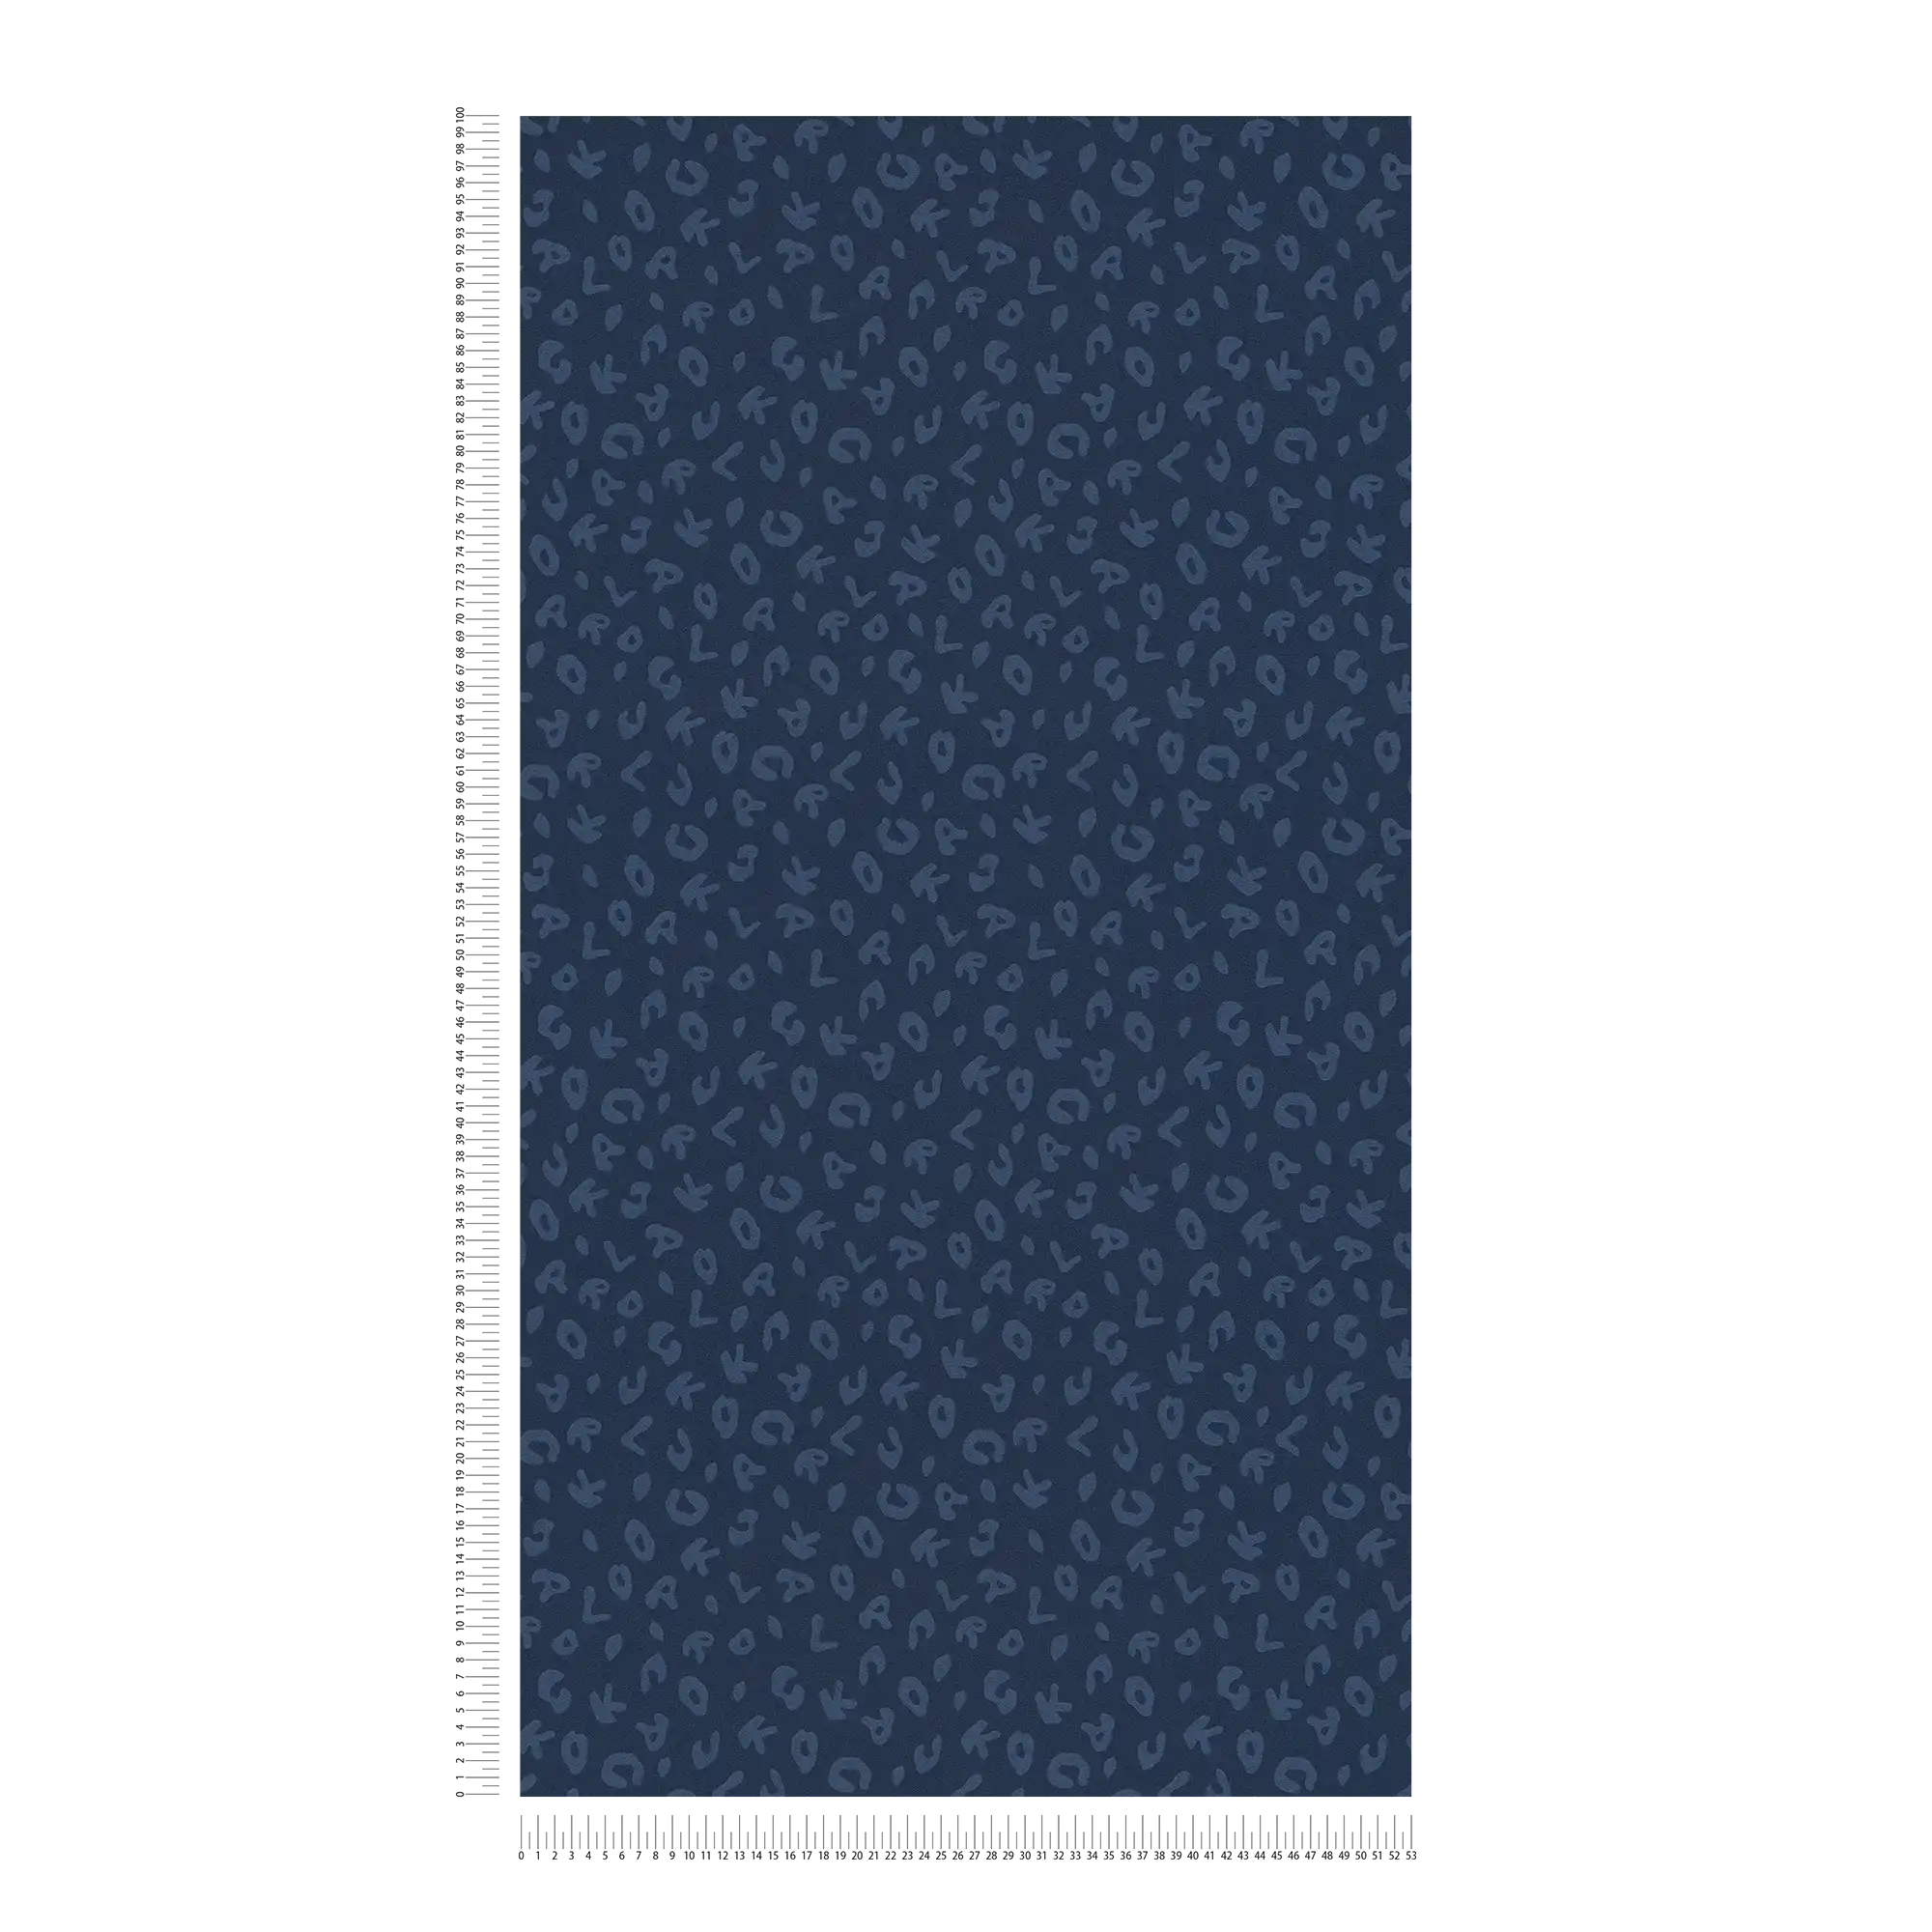             Karl LAGERFELD behang Animal Print - Blauw, Metallic
        